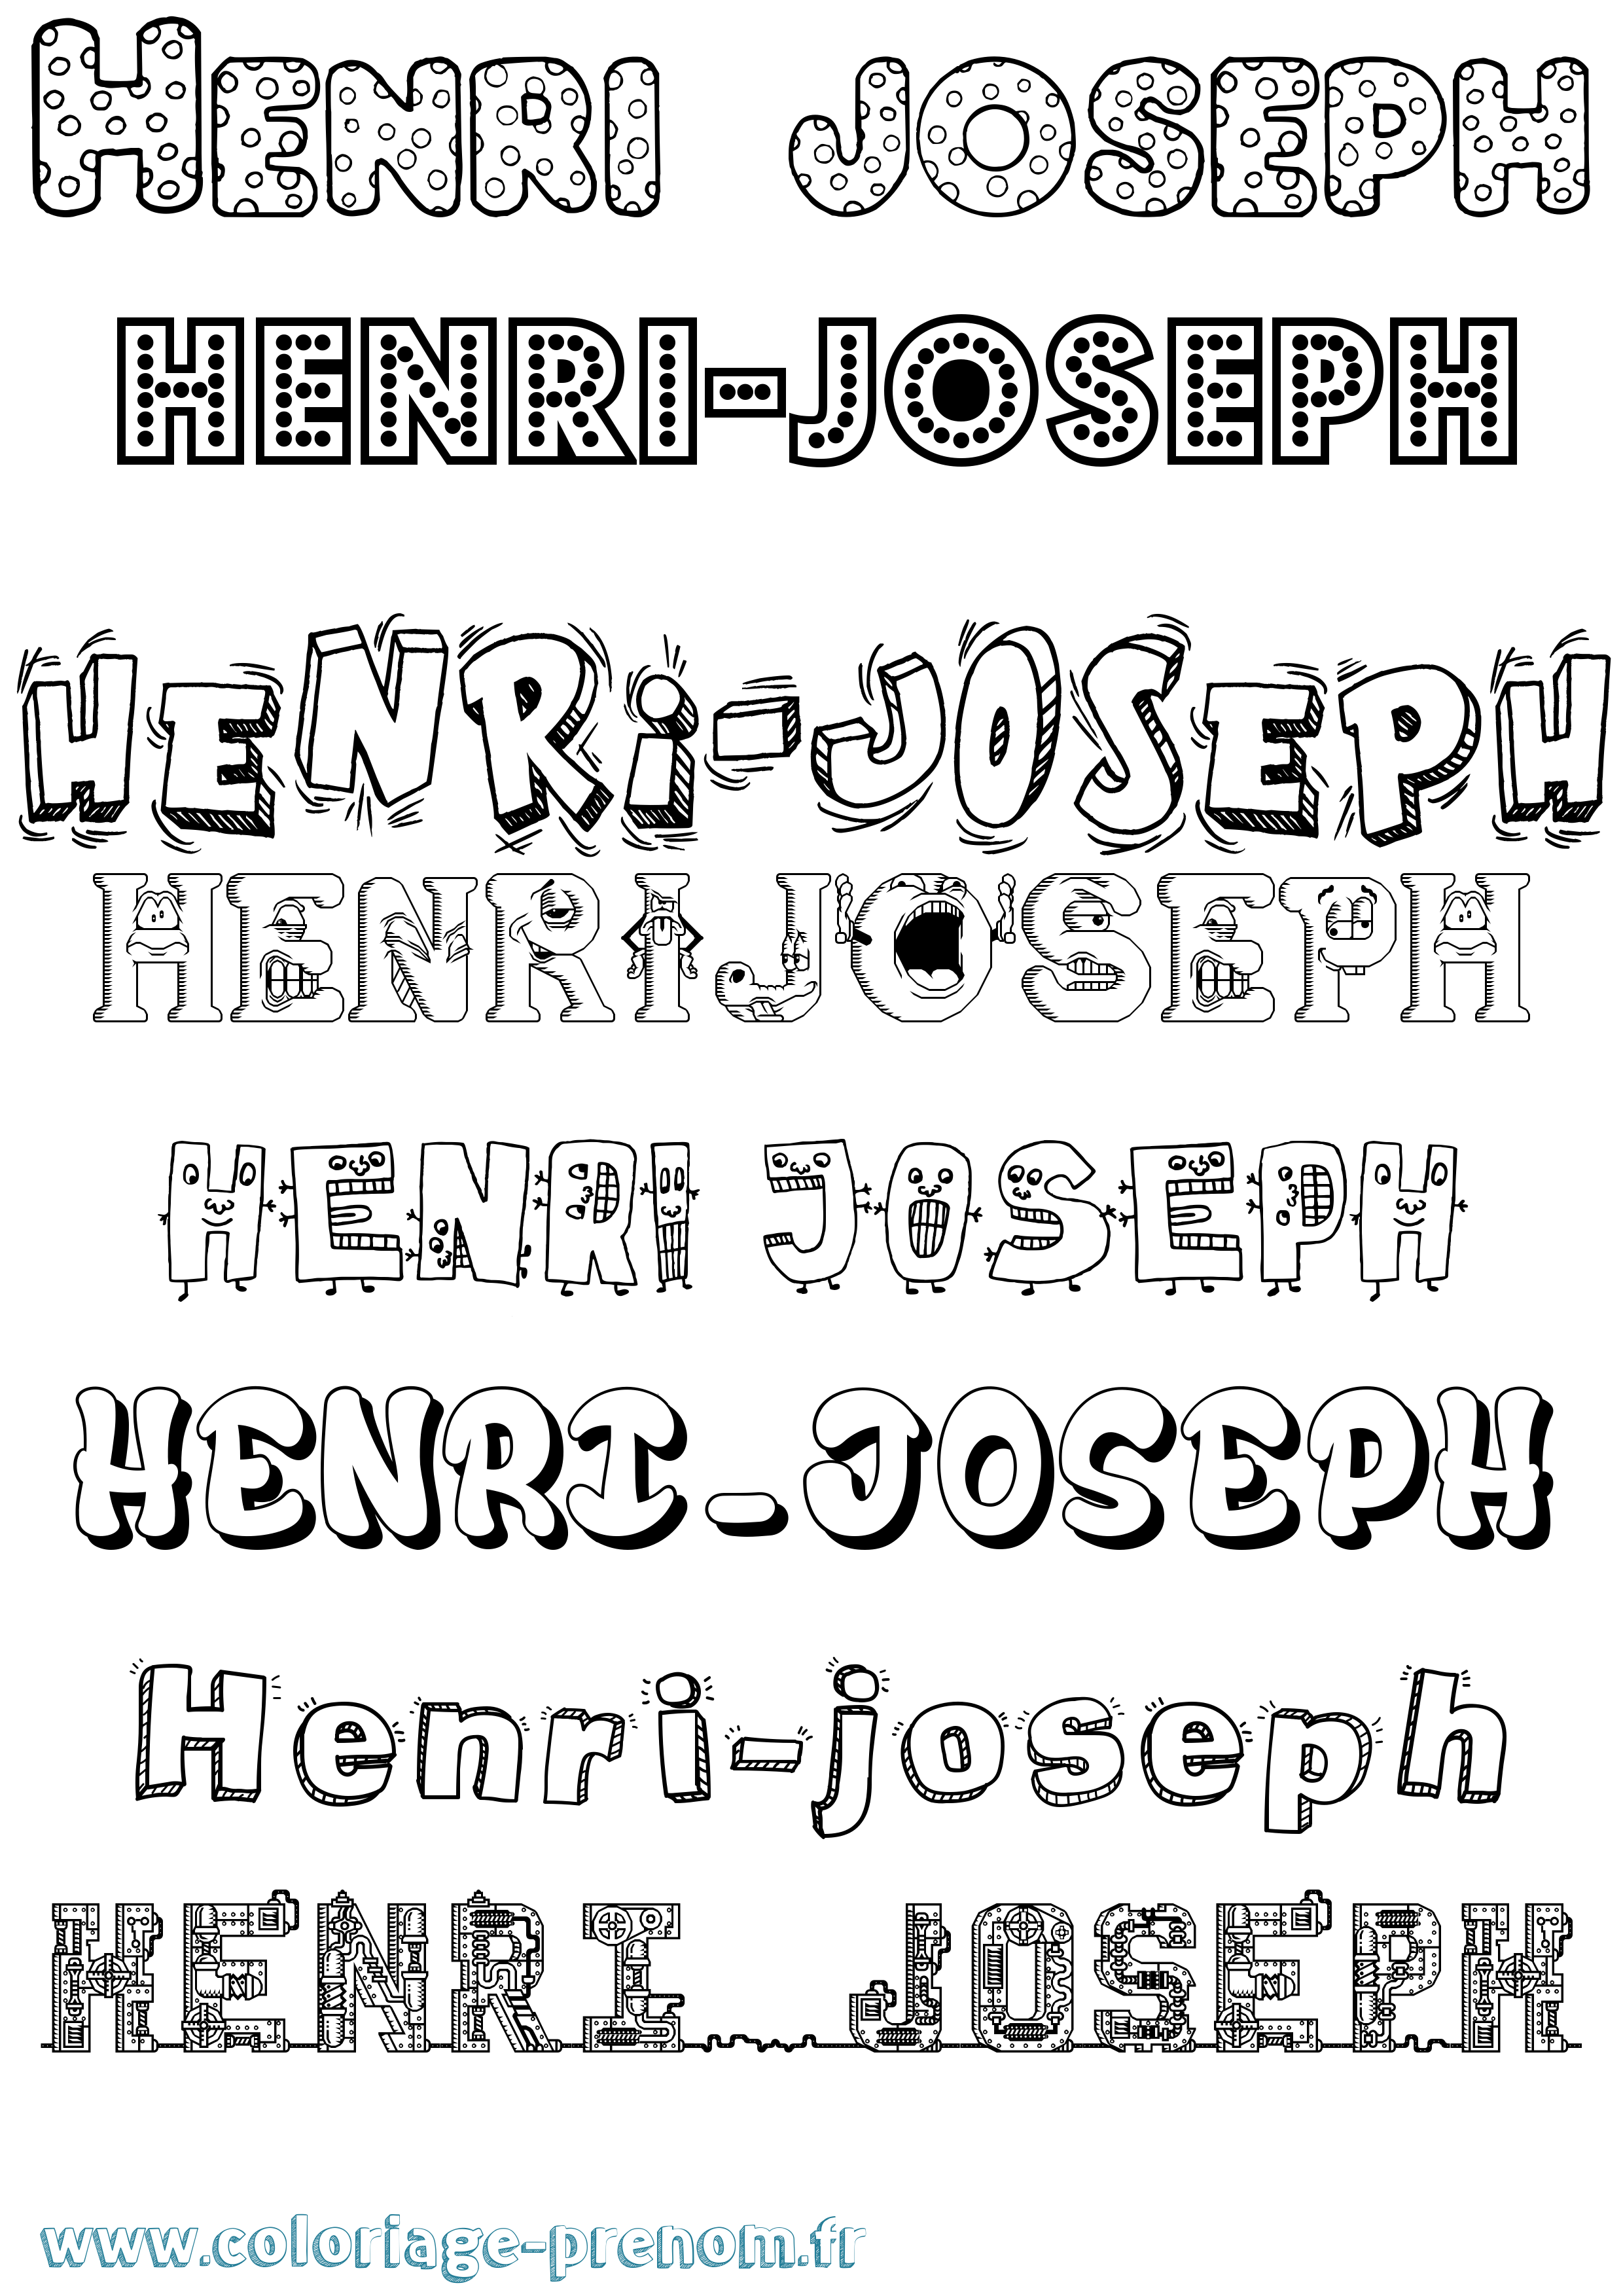 Coloriage prénom Henri-Joseph Fun